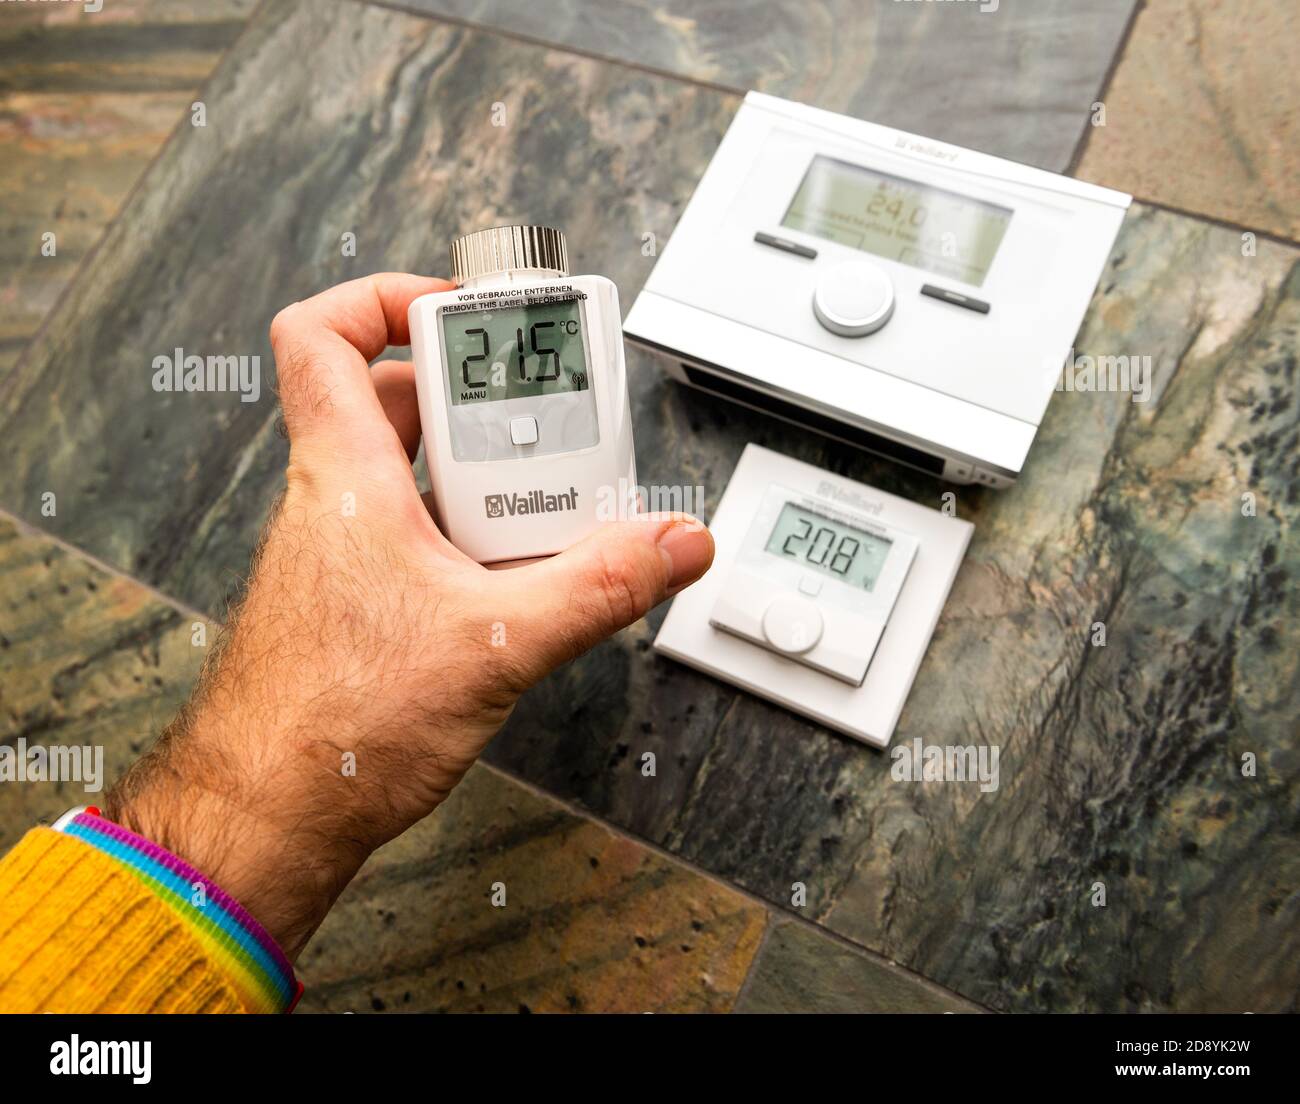 Paris, Francia - Oct 25, 2020: POV man mostrando dispositivos Vaillant IoT  dispositivo - VRC 700f termostato de compensación de tiempo, VR50 válvula  termostática y Ambisense VR51 termostato de habitación Fotografía de stock  - Alamy